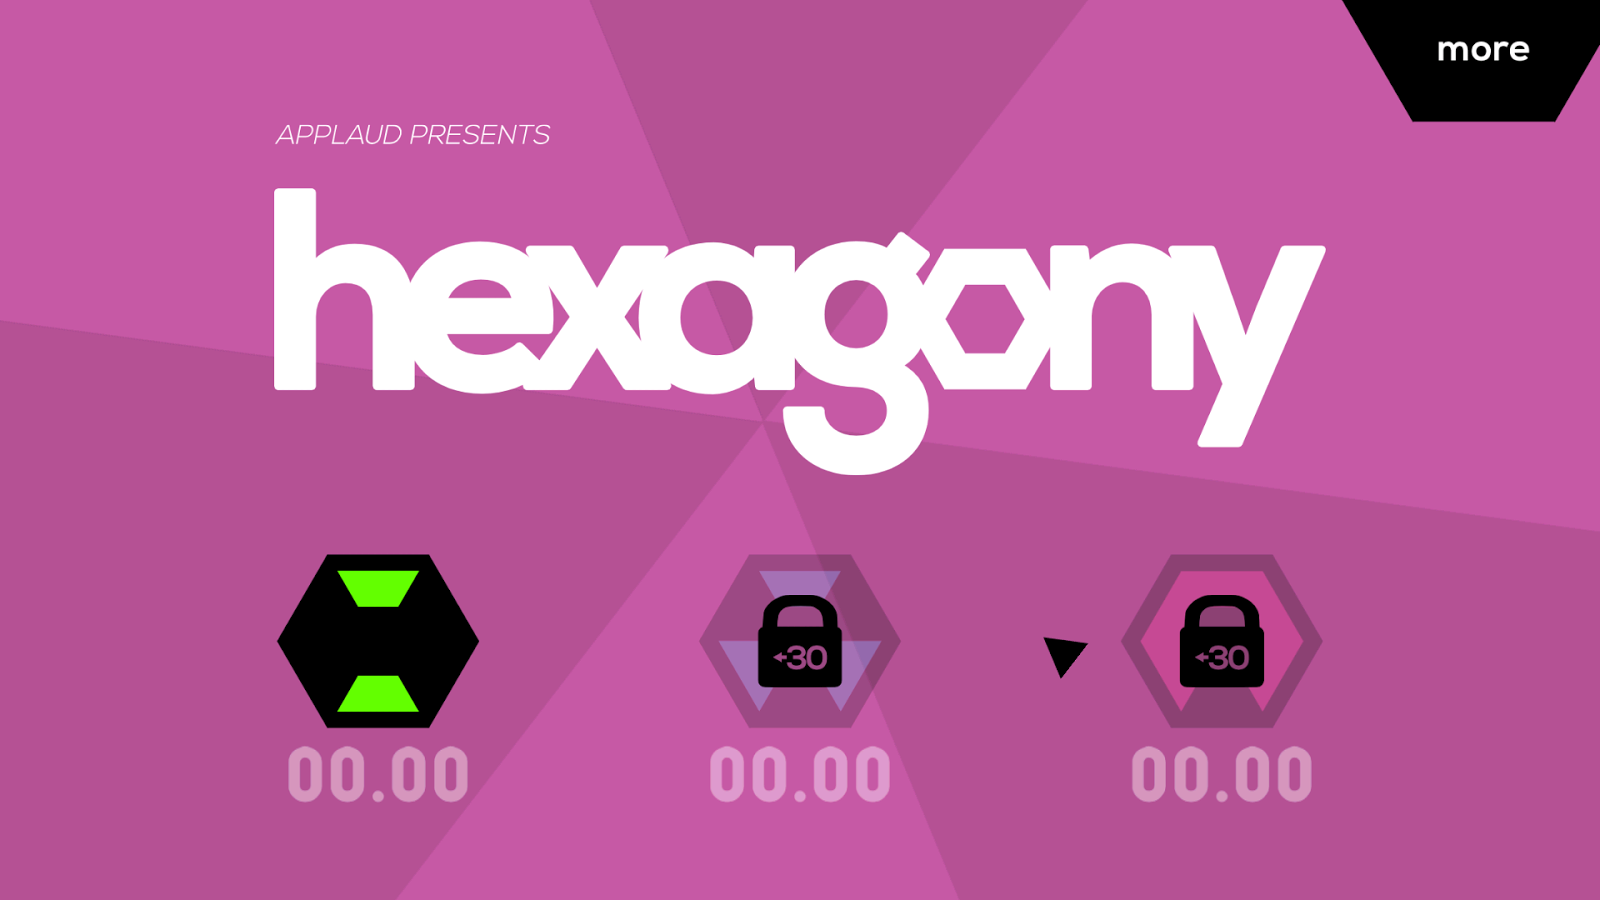 Hexagony - screenshot